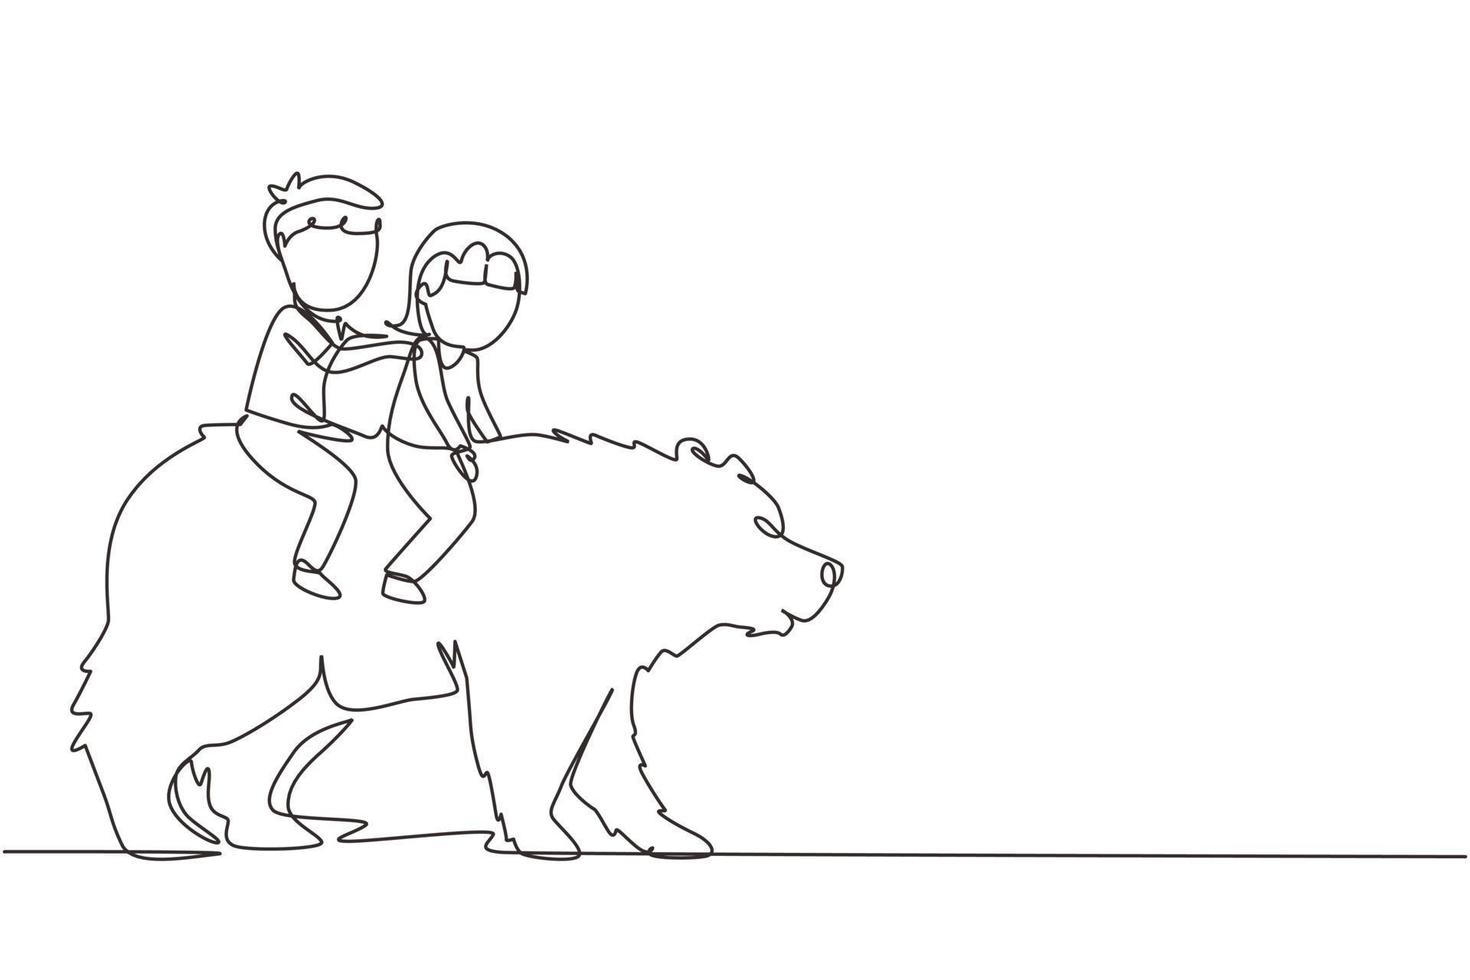 dibujo continuo de una línea feliz niño y niña montando oso pardo juntos. niños sentados en la espalda gran oso en el evento del circo. niños aprendiendo a montar bestia animal. vector de diseño de dibujo de una sola línea